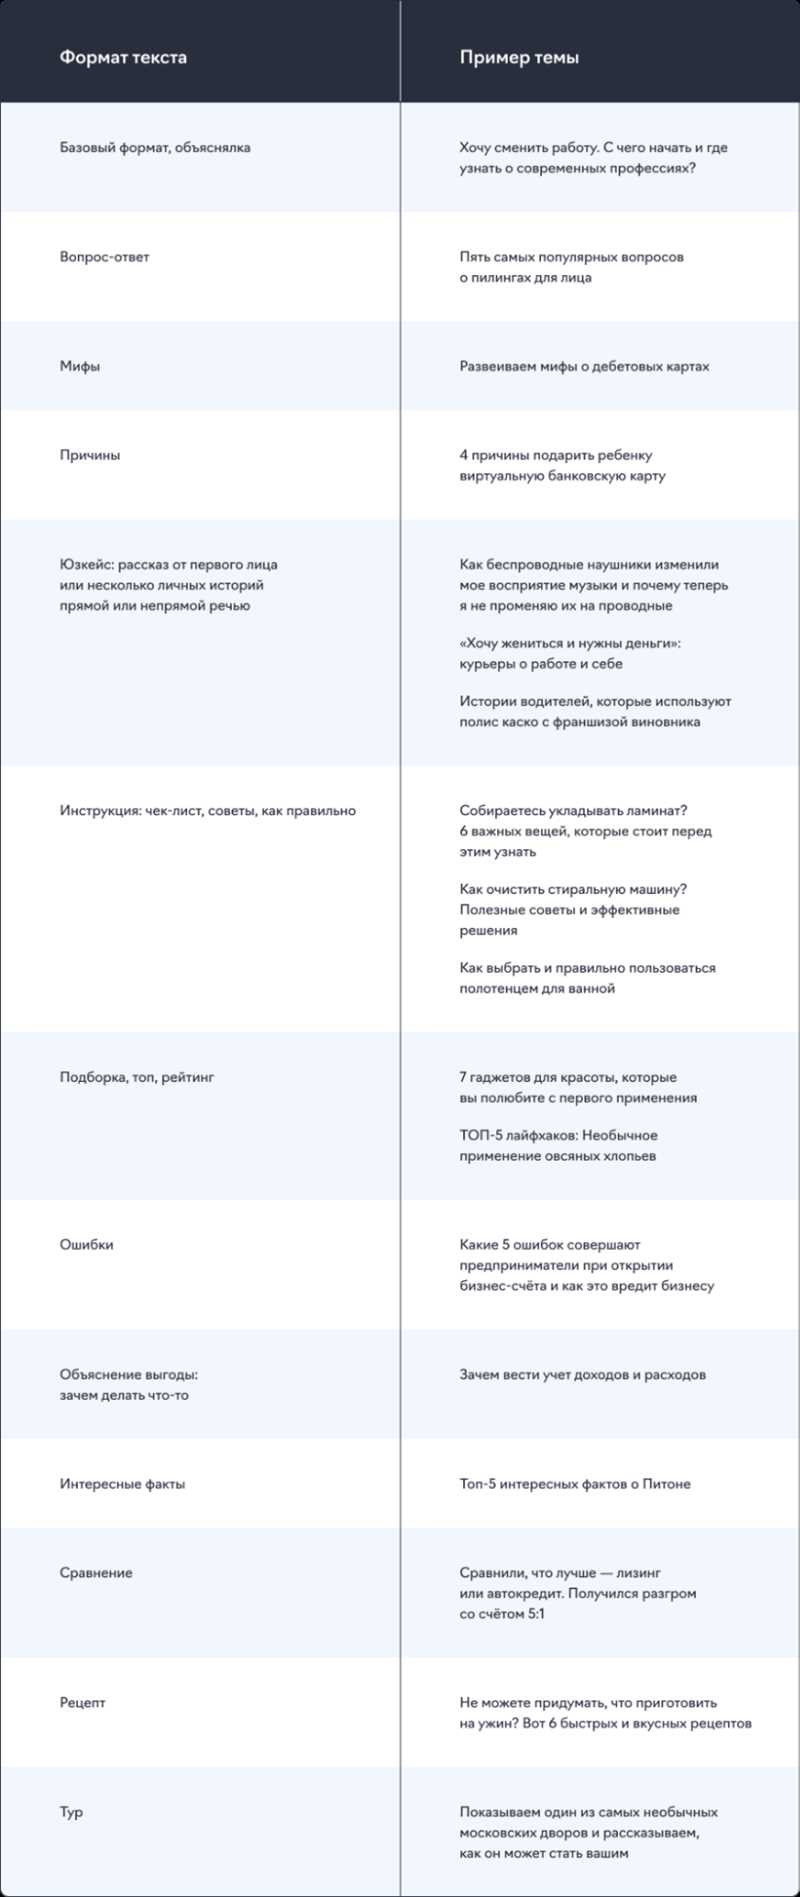 Как писать статьи для «Яндекс.Дзена»